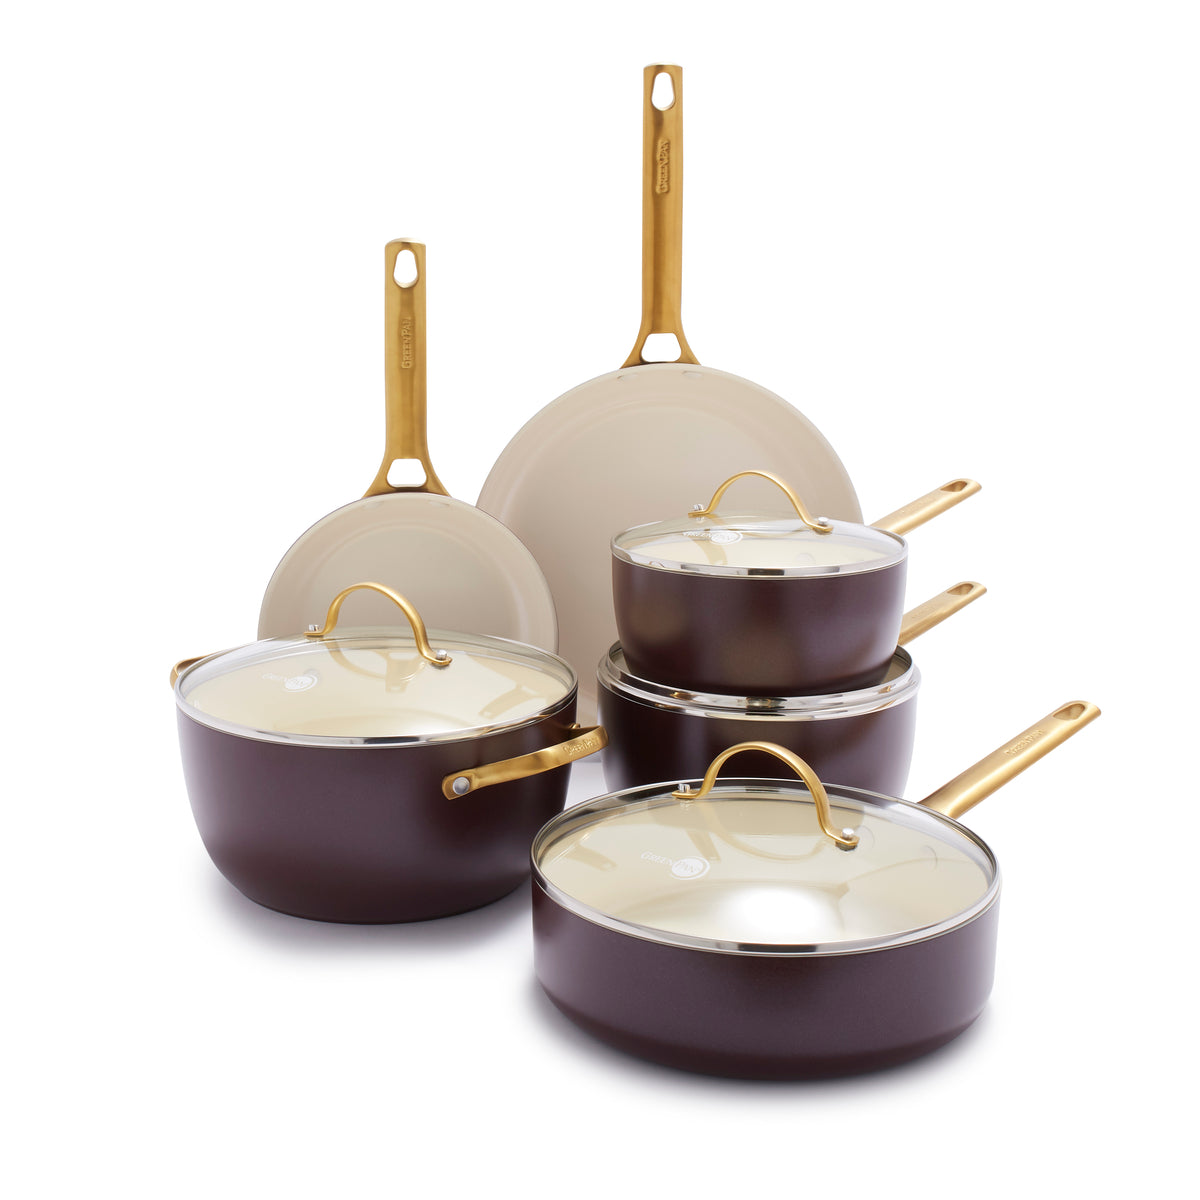  10 Pcs Pots and Pans Sets, Nonstick Cookware Set